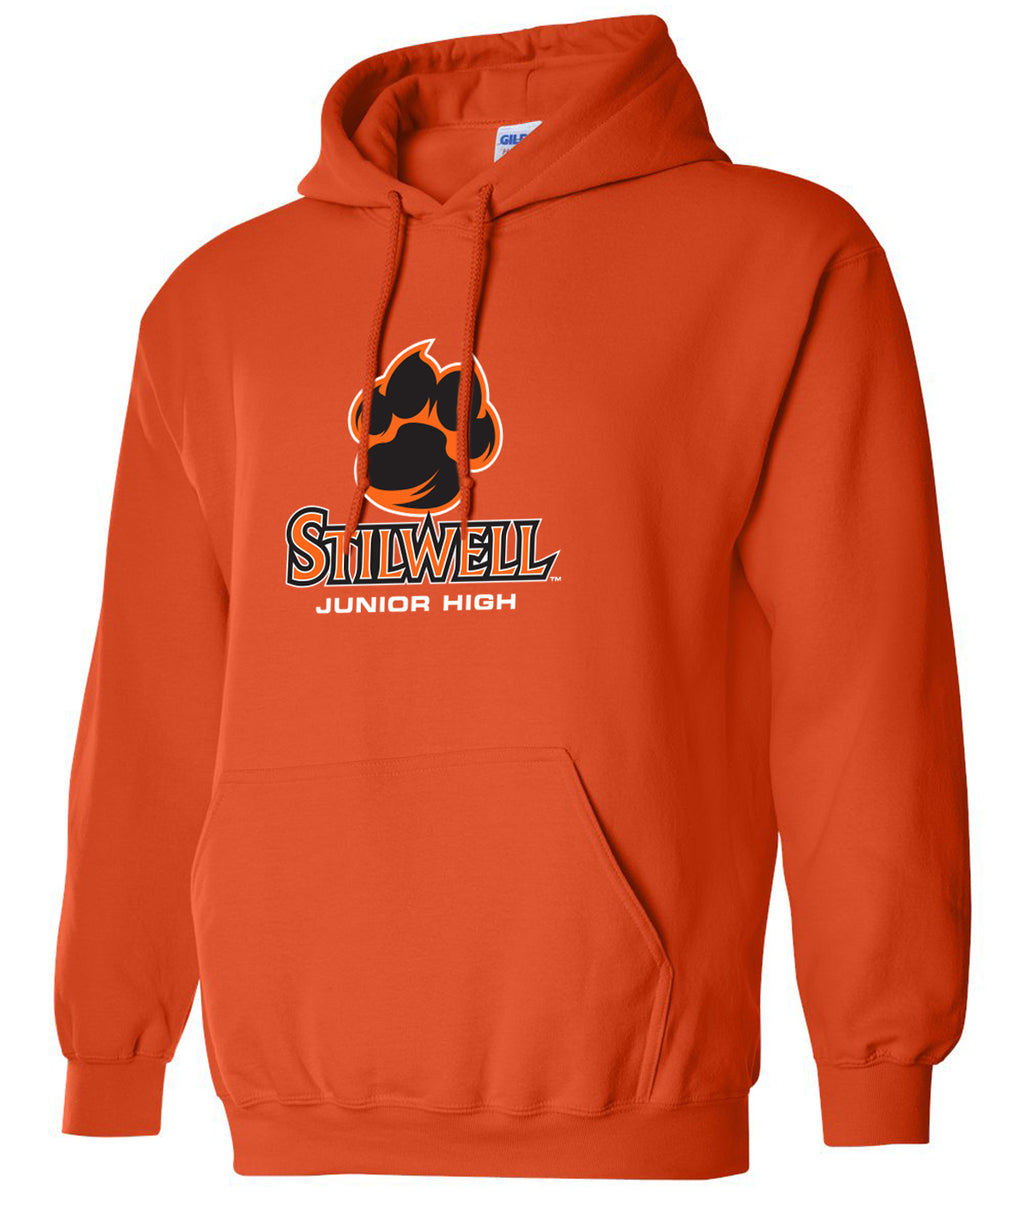 Stilwell Pride Hooded Sweatshirt